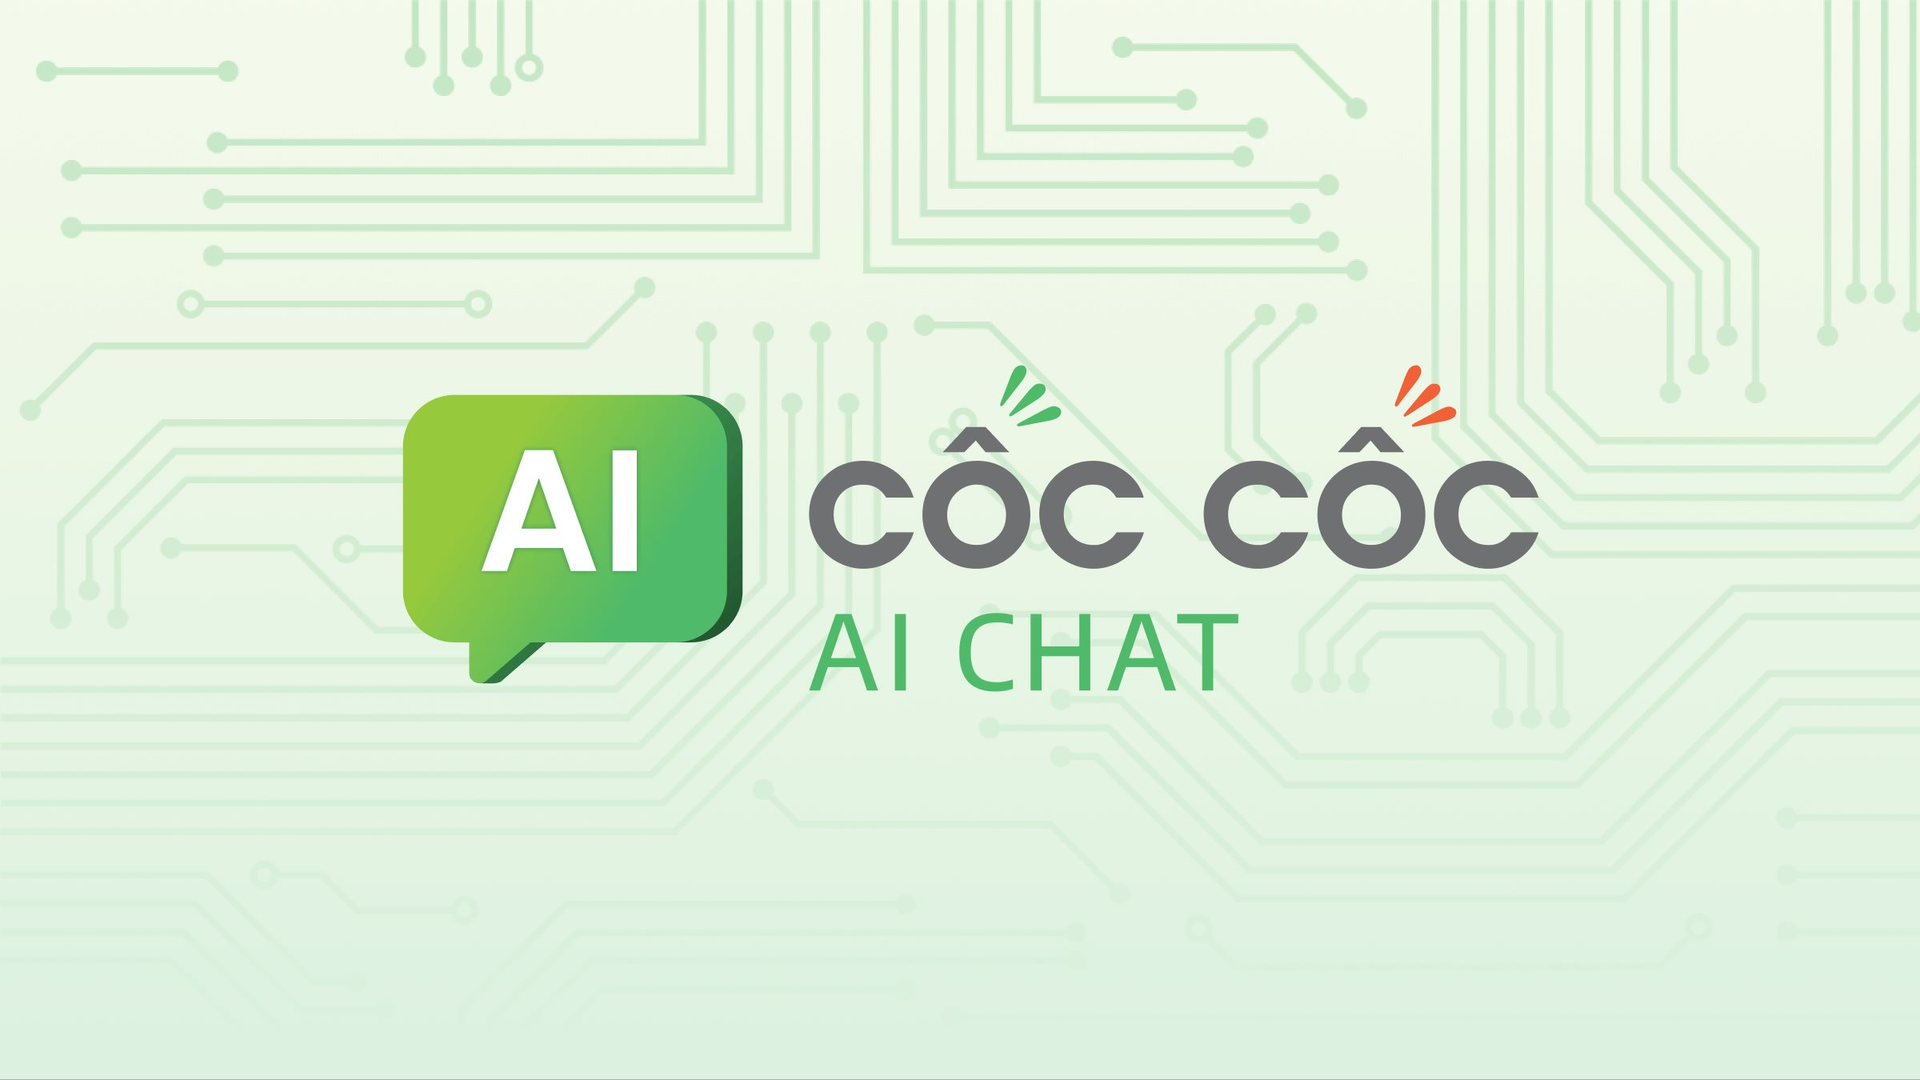 Cốc Cốc tung công cụ AI Chat dựa trên mô hình Chat GPT: Sẵn sàng cạnh tranh sòng phẳng với các gã khổng lồ công nghệ trên thế giới